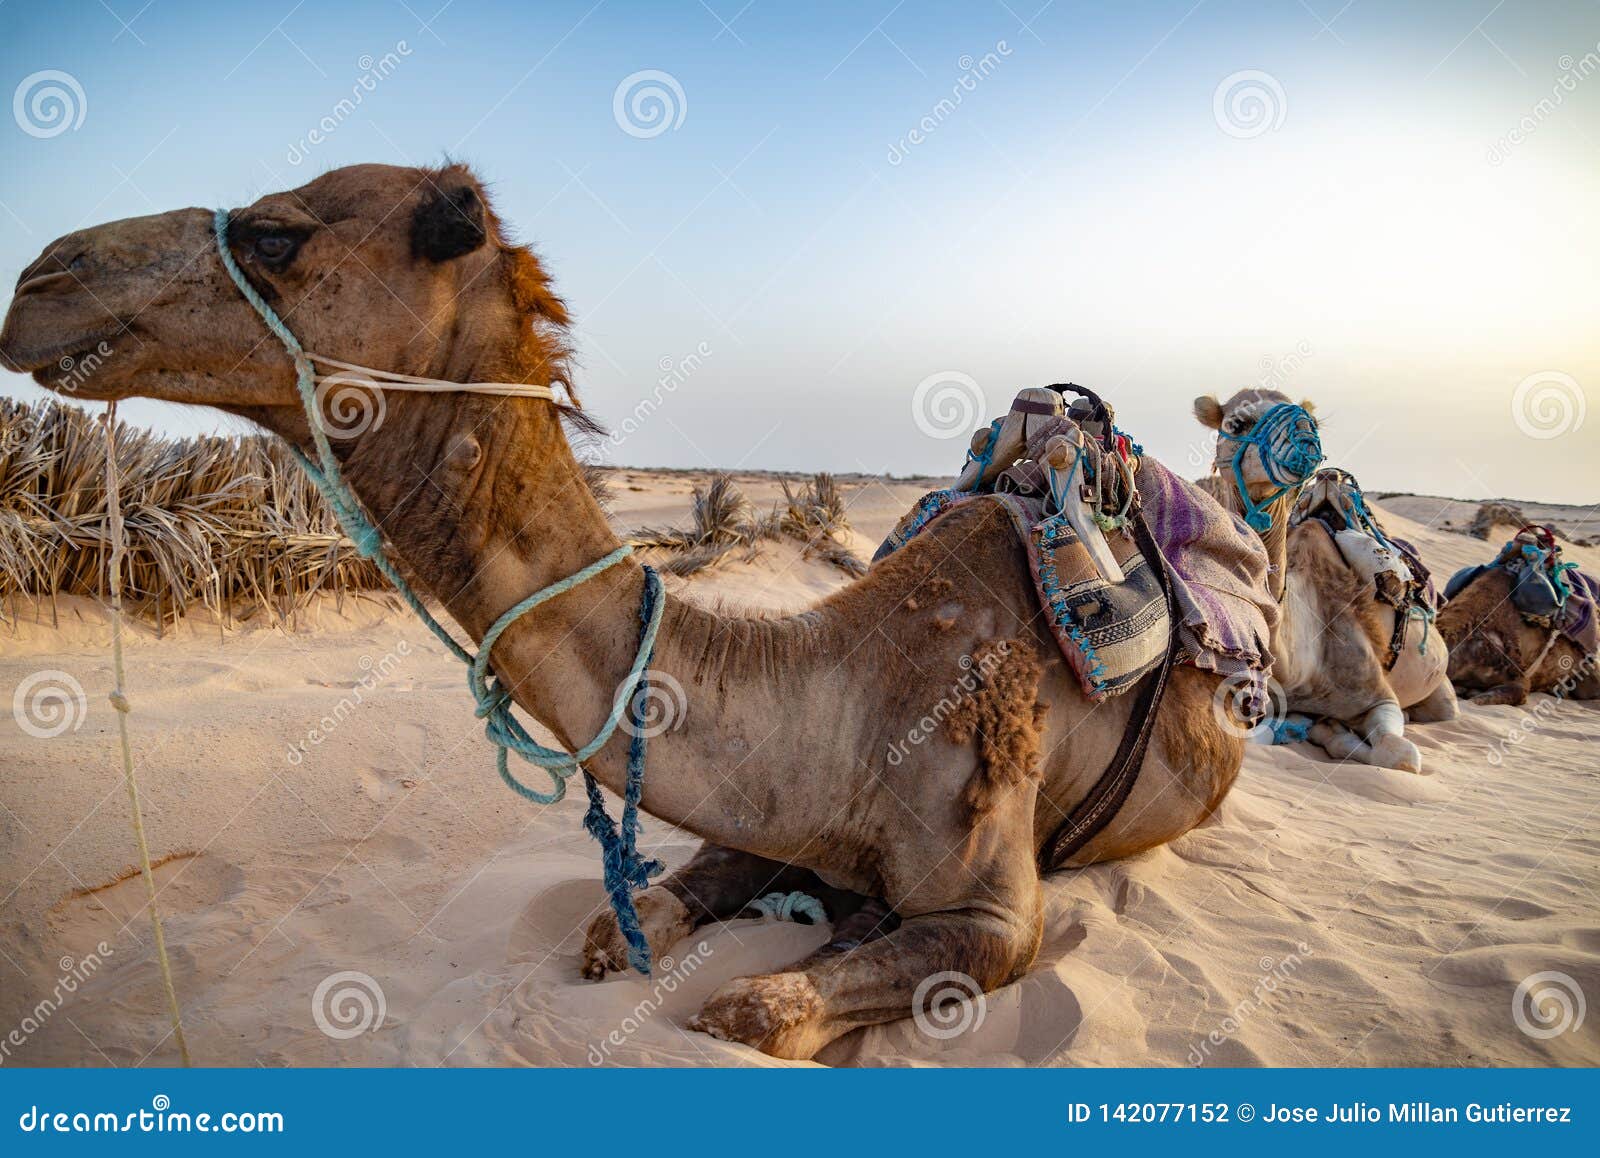 siluetas de camellos en el desierto del sahara